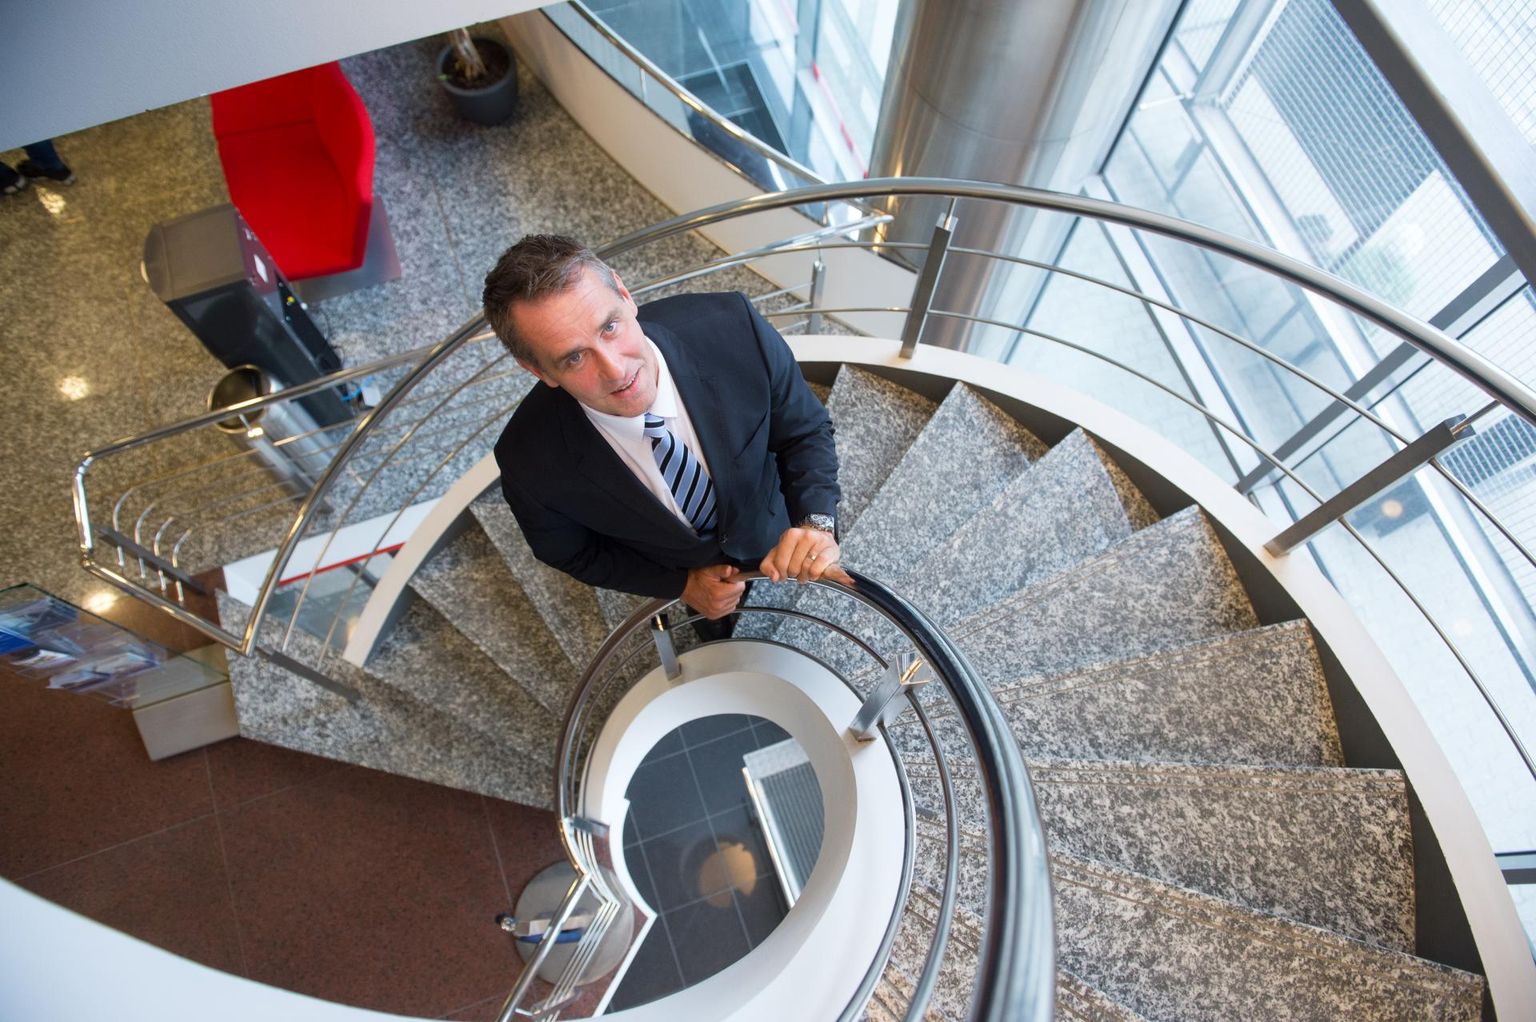 Айвар Рехе покинул должность главы эстонского филиала Danske Bank 1 сентября 2015 года.